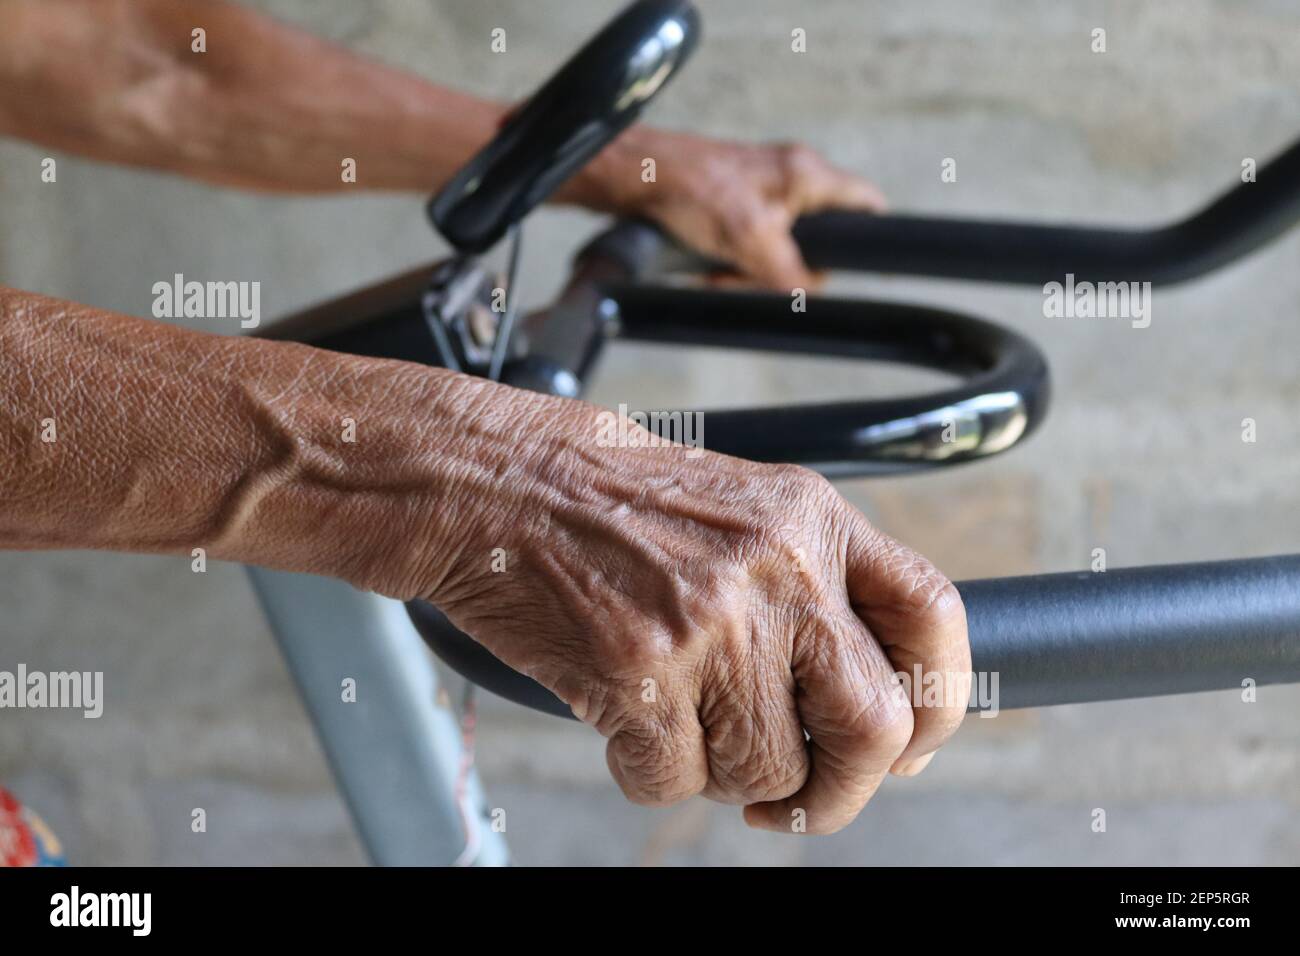 "i nostri allenatori utilizzano la tecnologia attuale", mamma di 80 anni che usa una moderna bicicletta da ginnastica per il suo allenamento quotidiano. Foto Stock